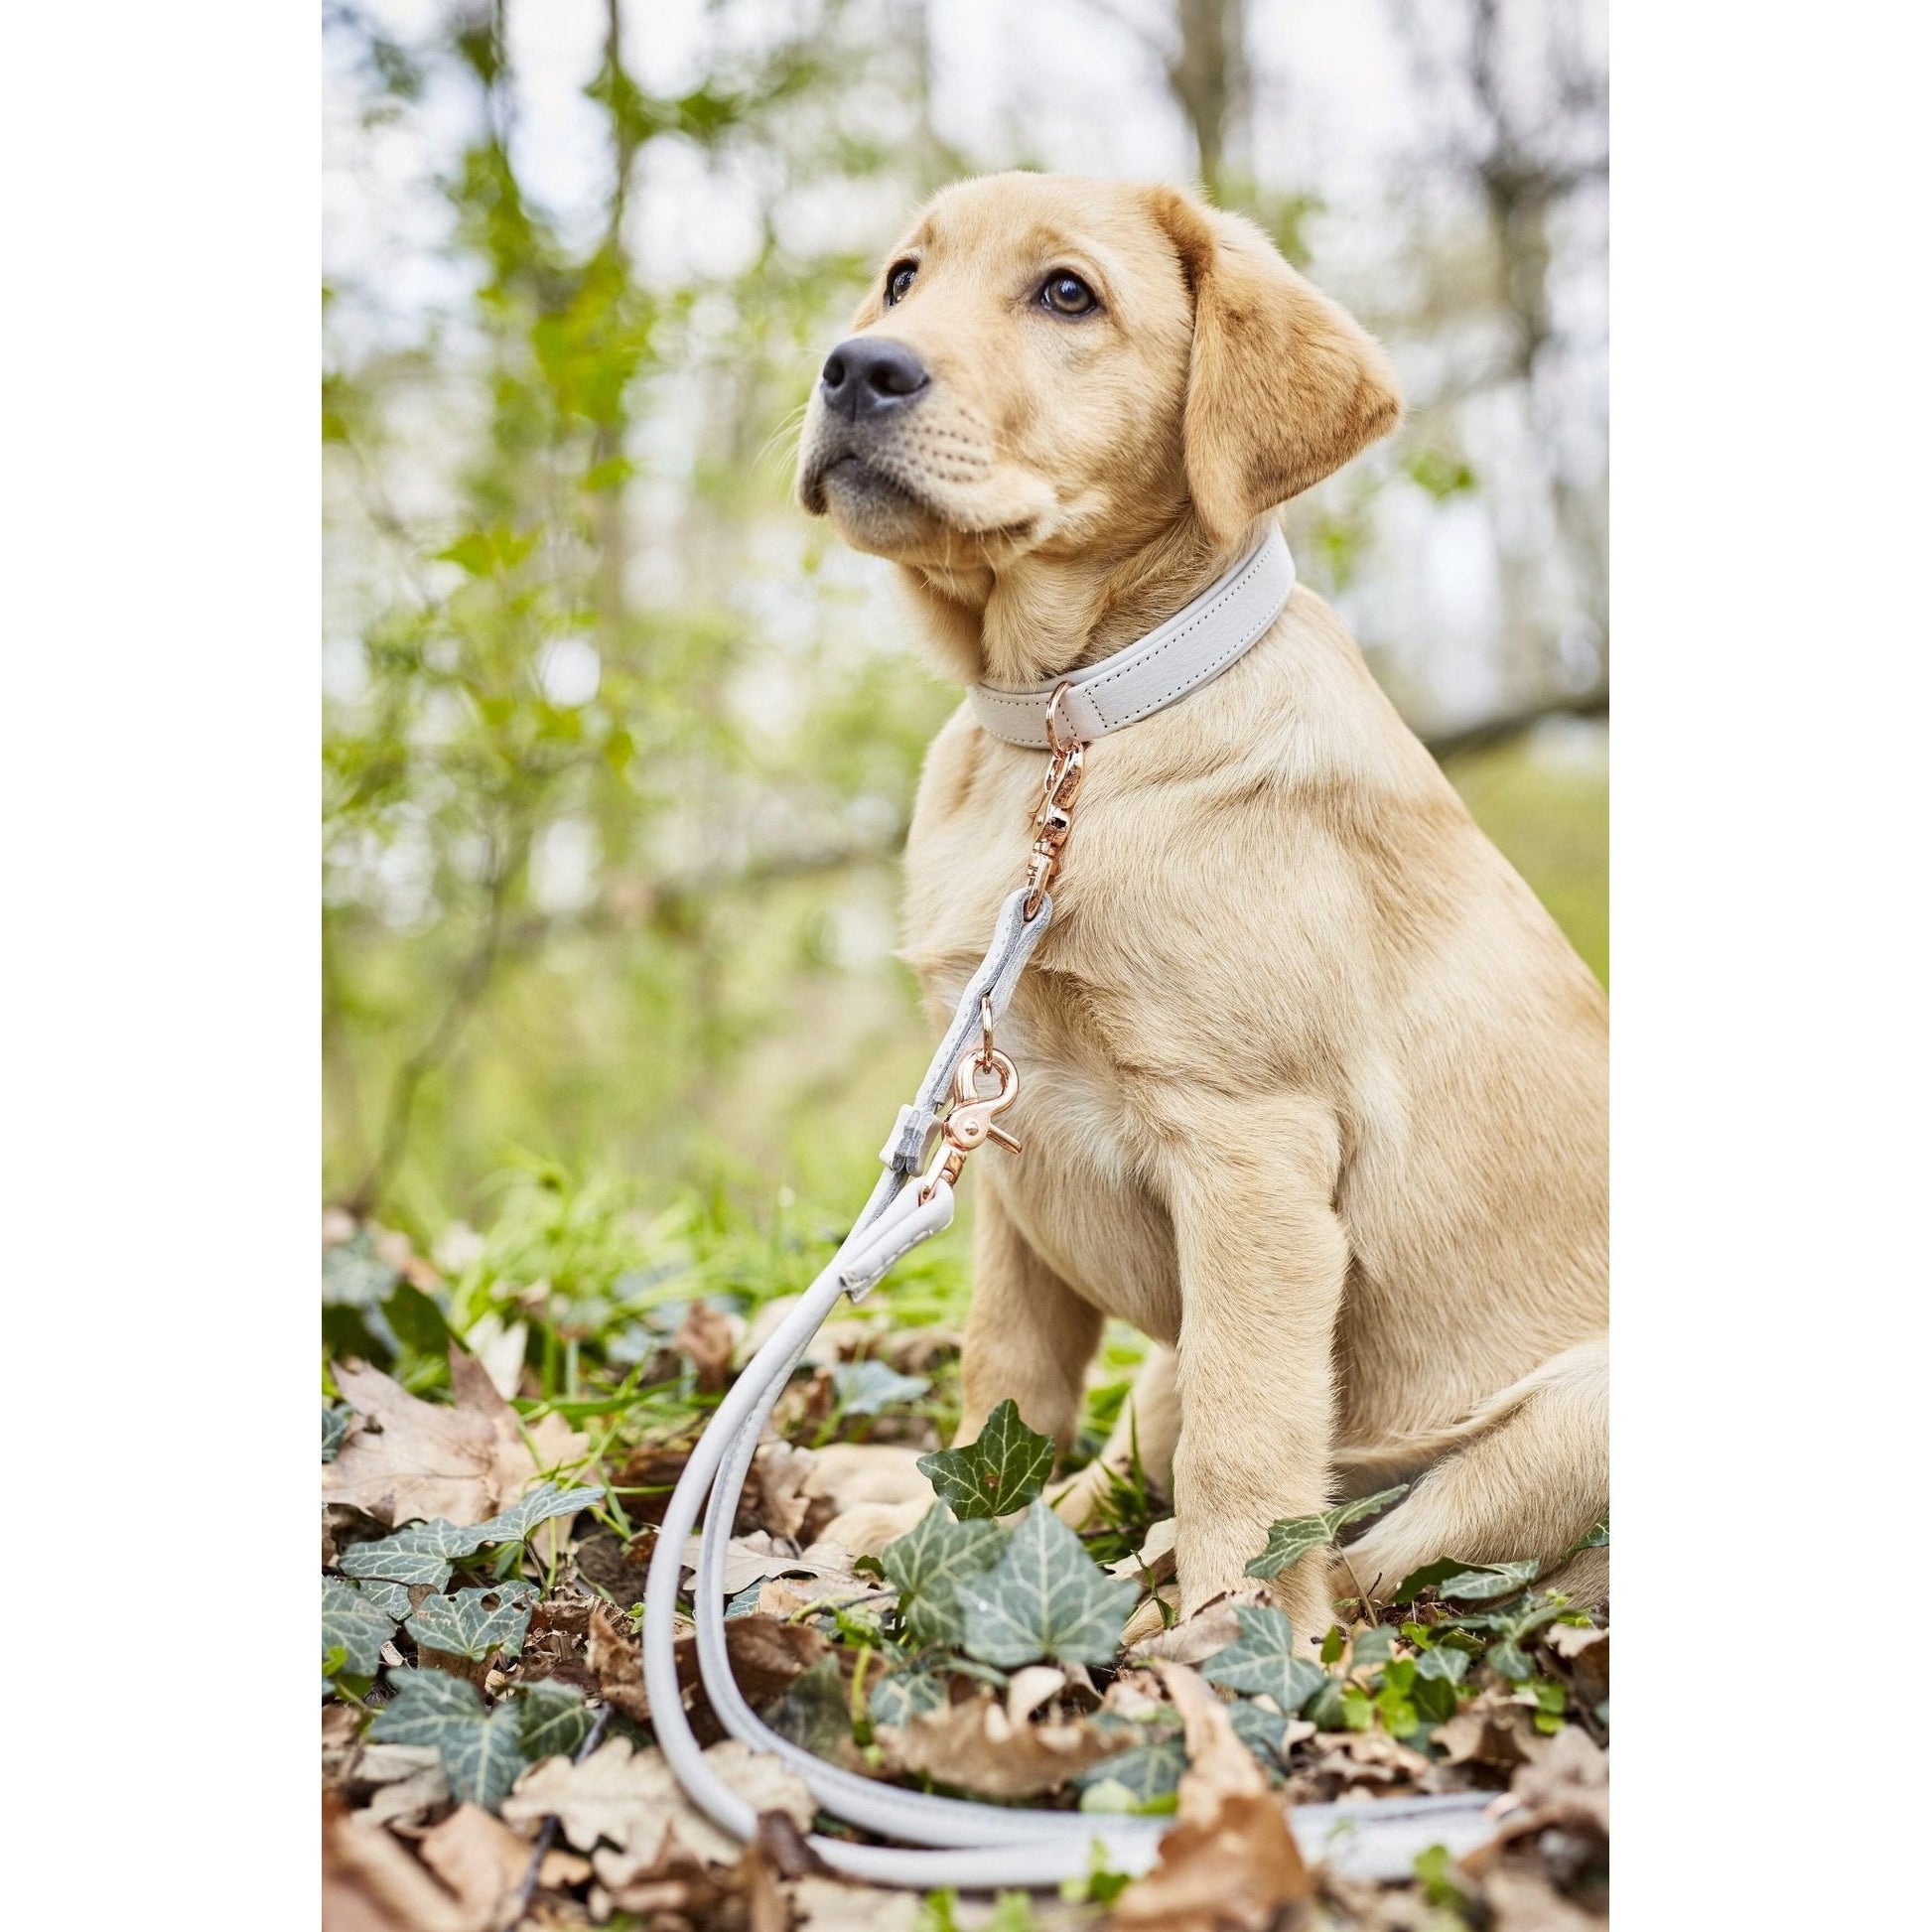 LABONI AMICI Hundeleine aus Leder - Elegante Hundeleine für modebewusste Hundefreunde - Askmy4Cats